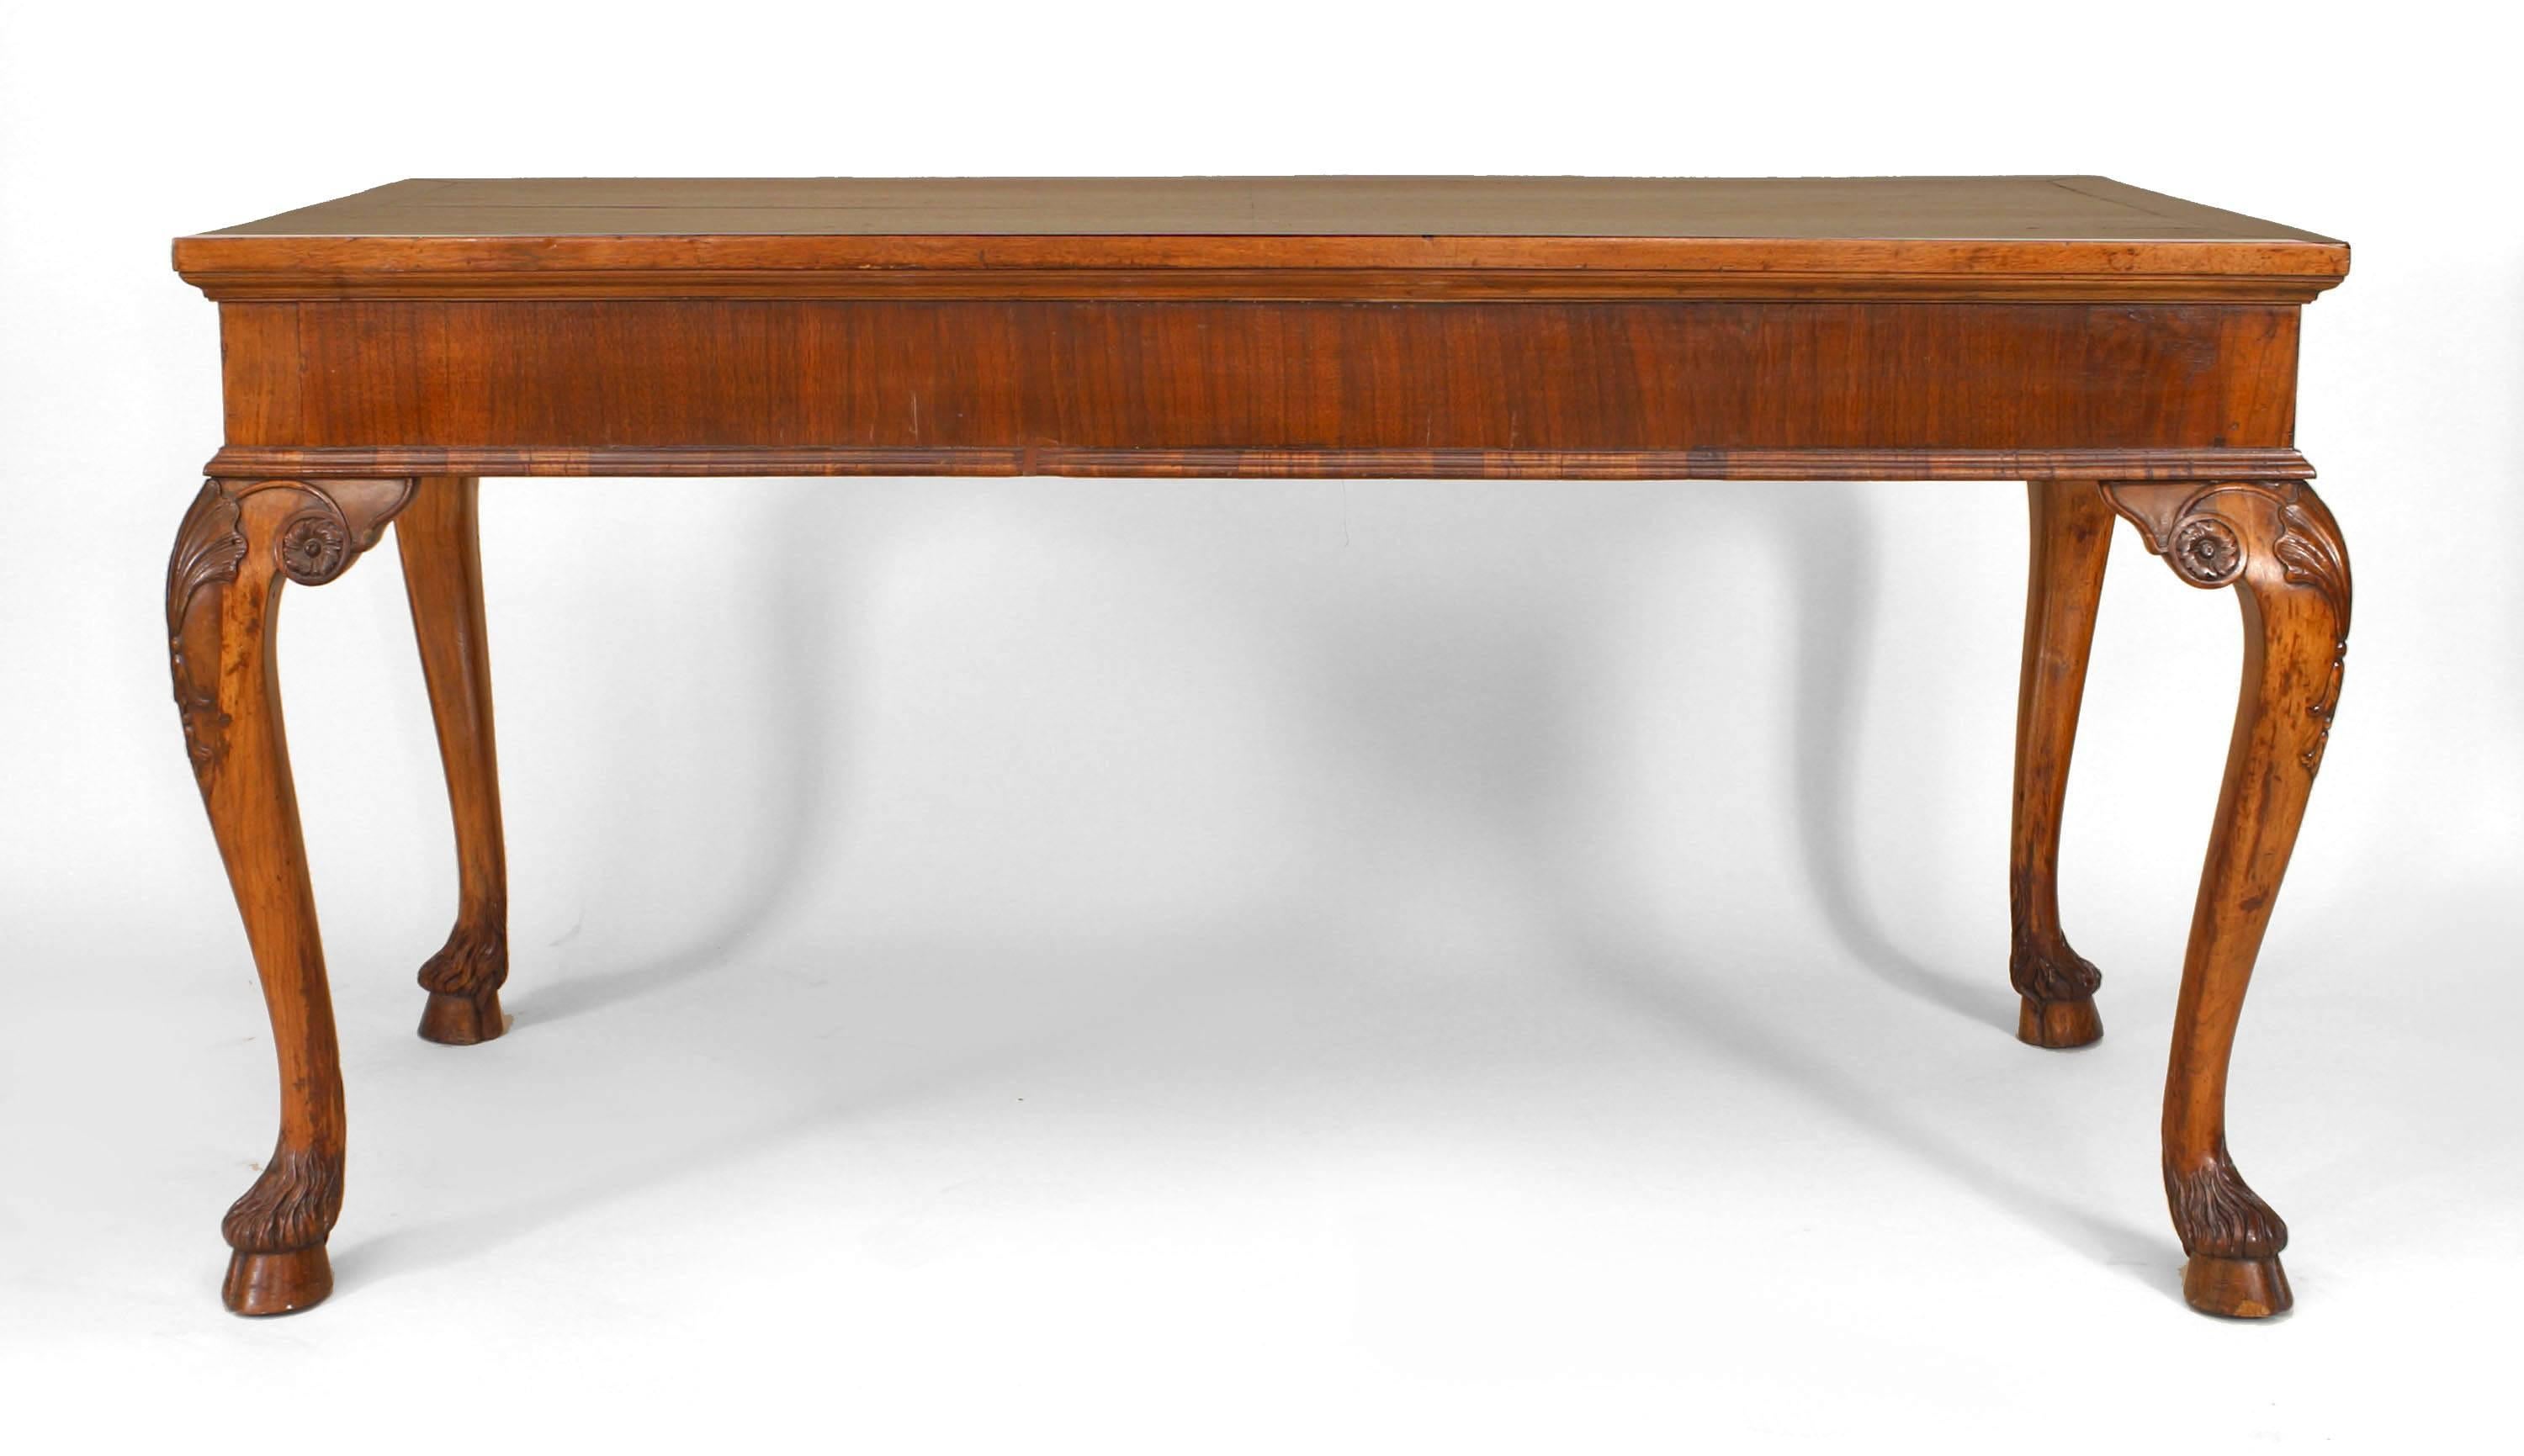 Table de centre rectangulaire en placage de bois d'olivier, de style vénitien italien (XIXe siècle), avec des pieds cabriole se terminant par des pieds sculptés en forme de sabot.
